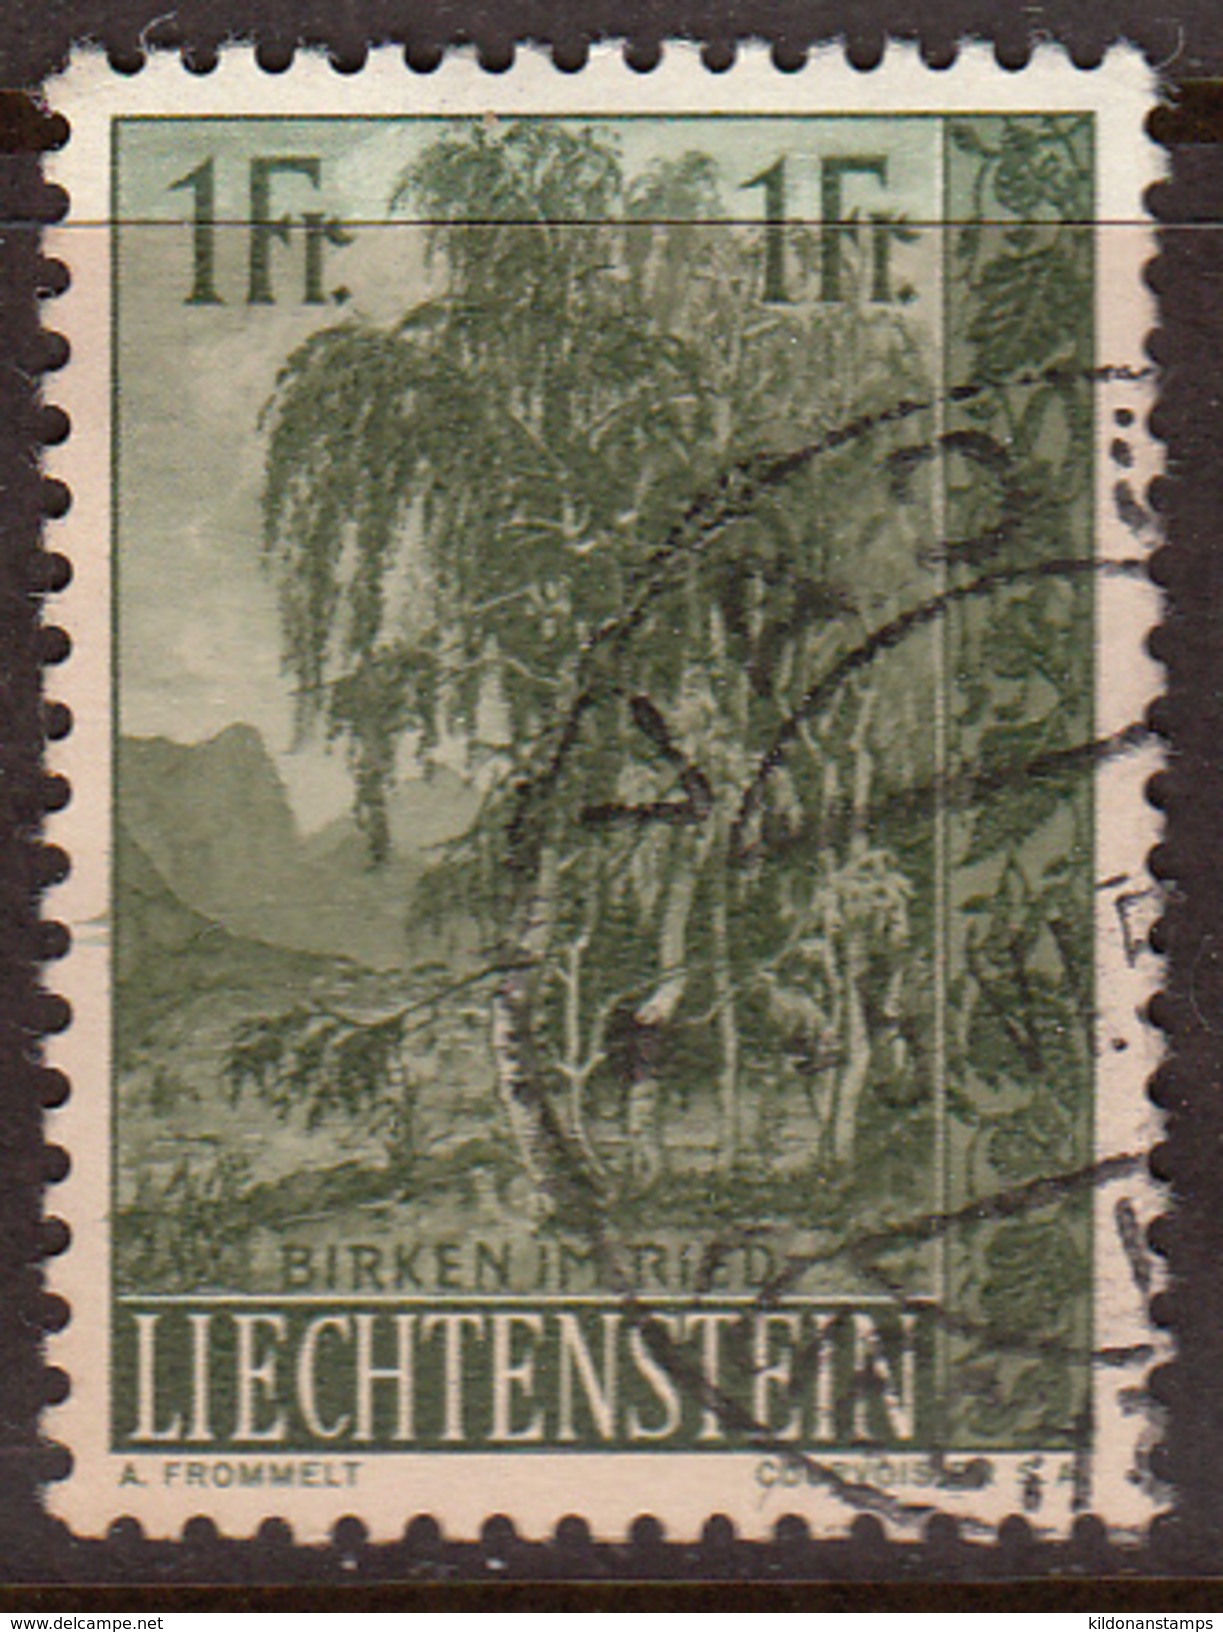 Liechtenstein 1957, Cancelled, Sc# 314 - Usati